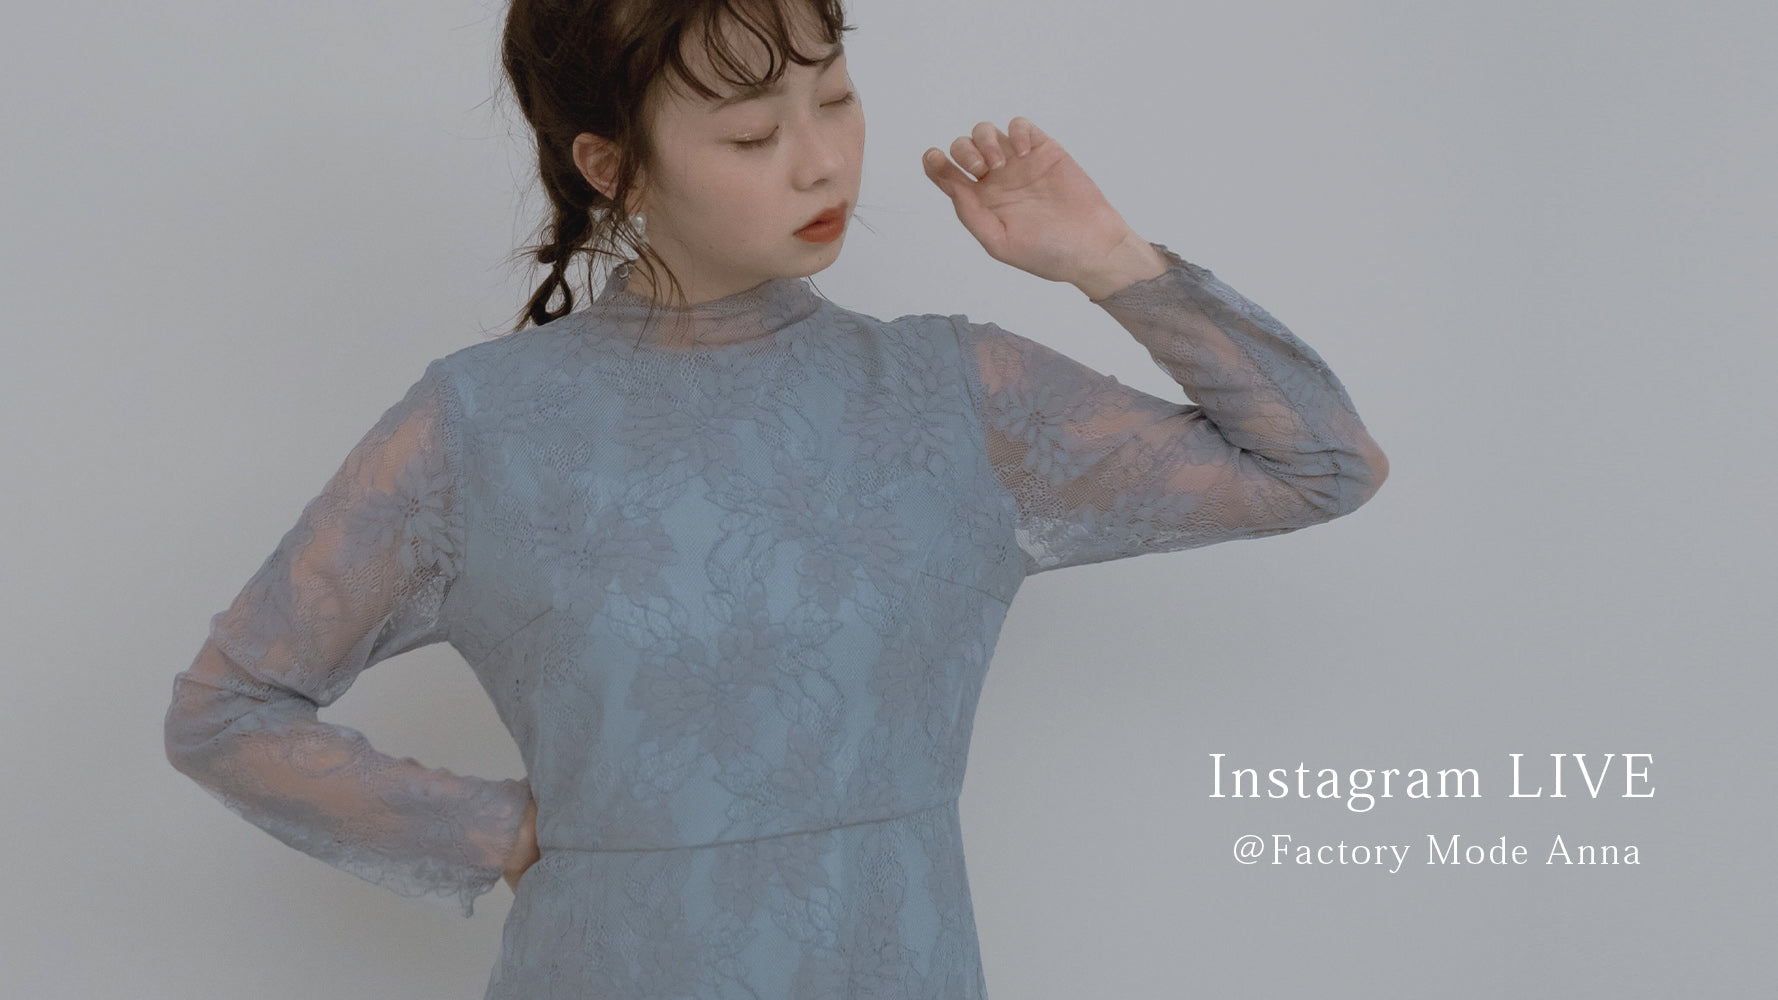 11/25 Instagram LIVE @Factory Mode Anna